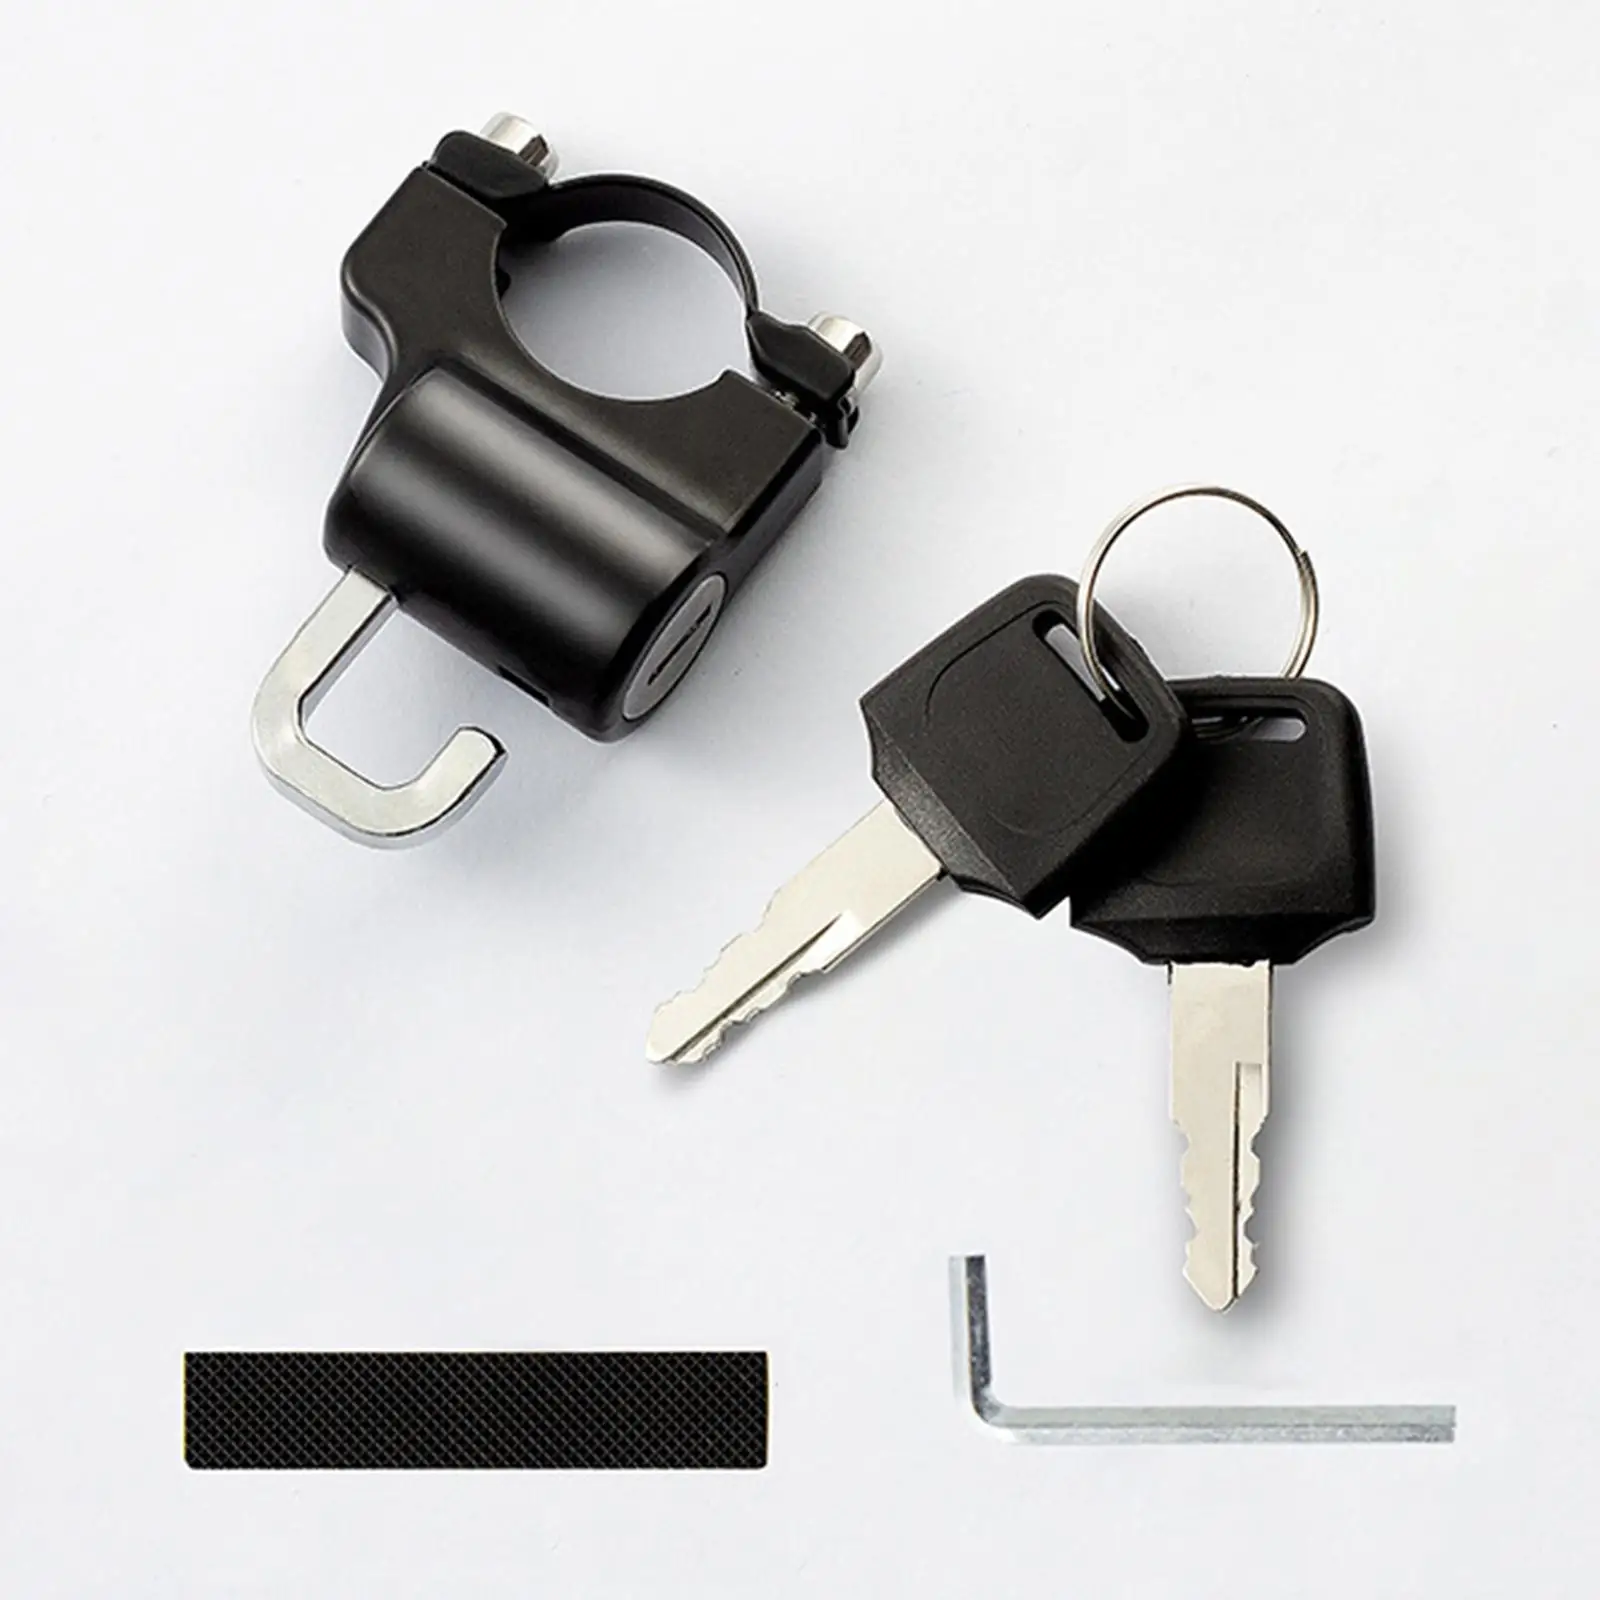 1Pc Universal Motorcycle Motorbike Helmet Lock Metal 22mm Black with 2 Keys Set 